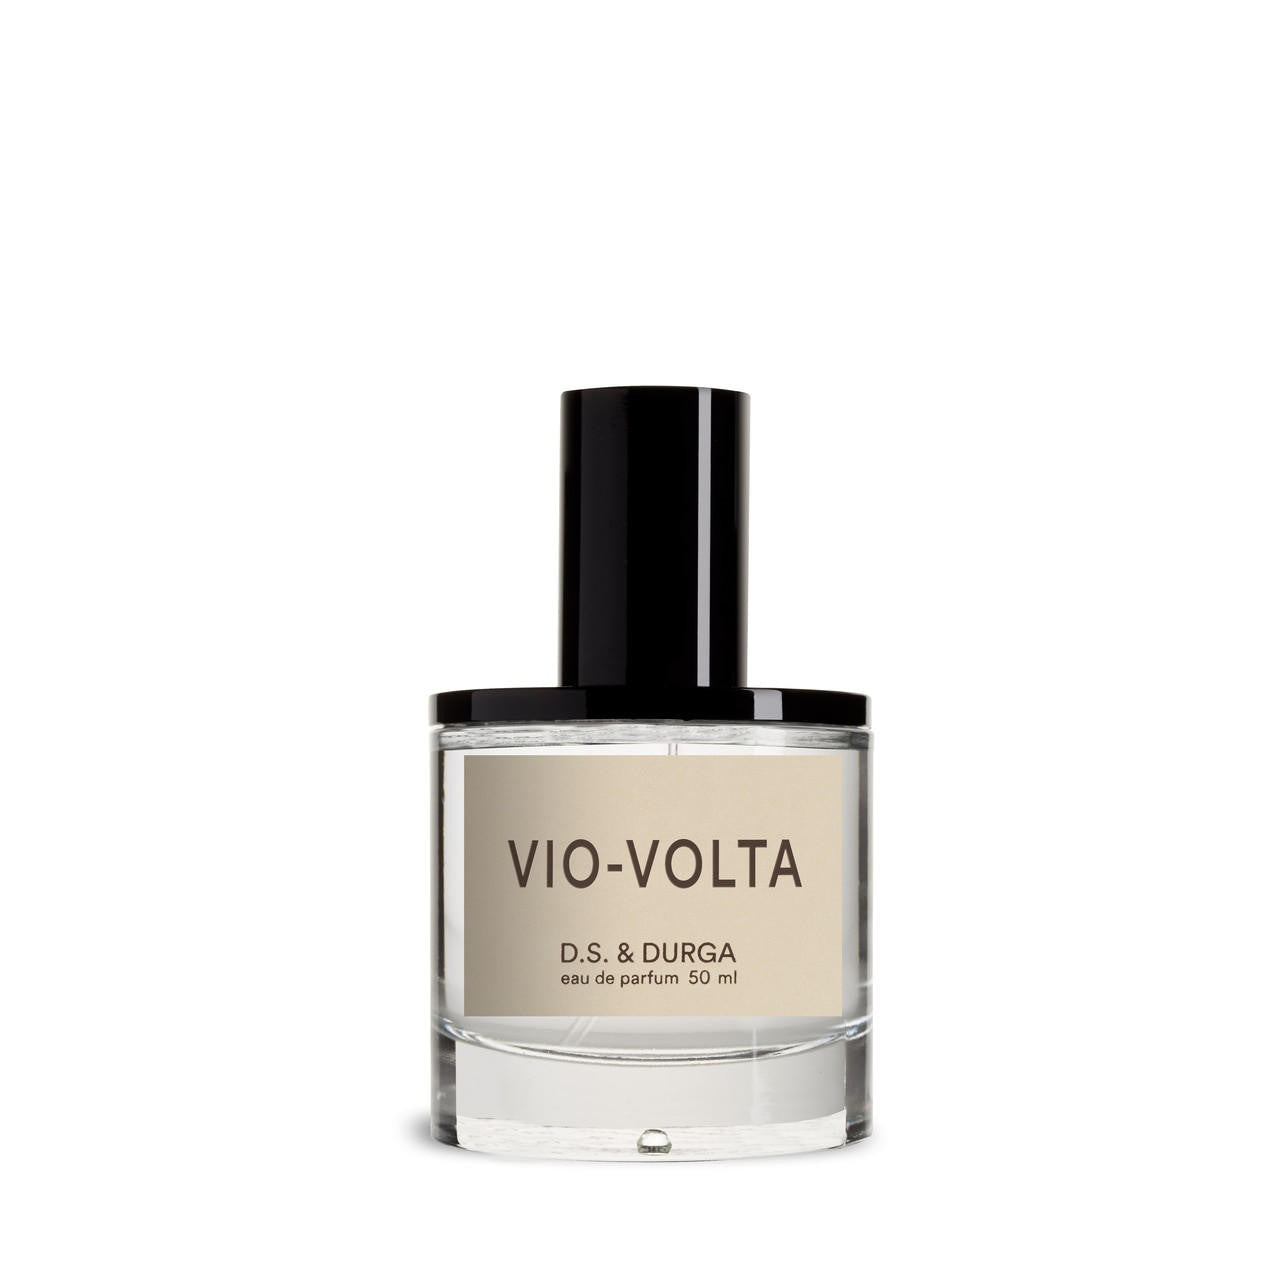 D.S. and DURGA D.S. & DURGA Vio-Volta Eau de Parfum 